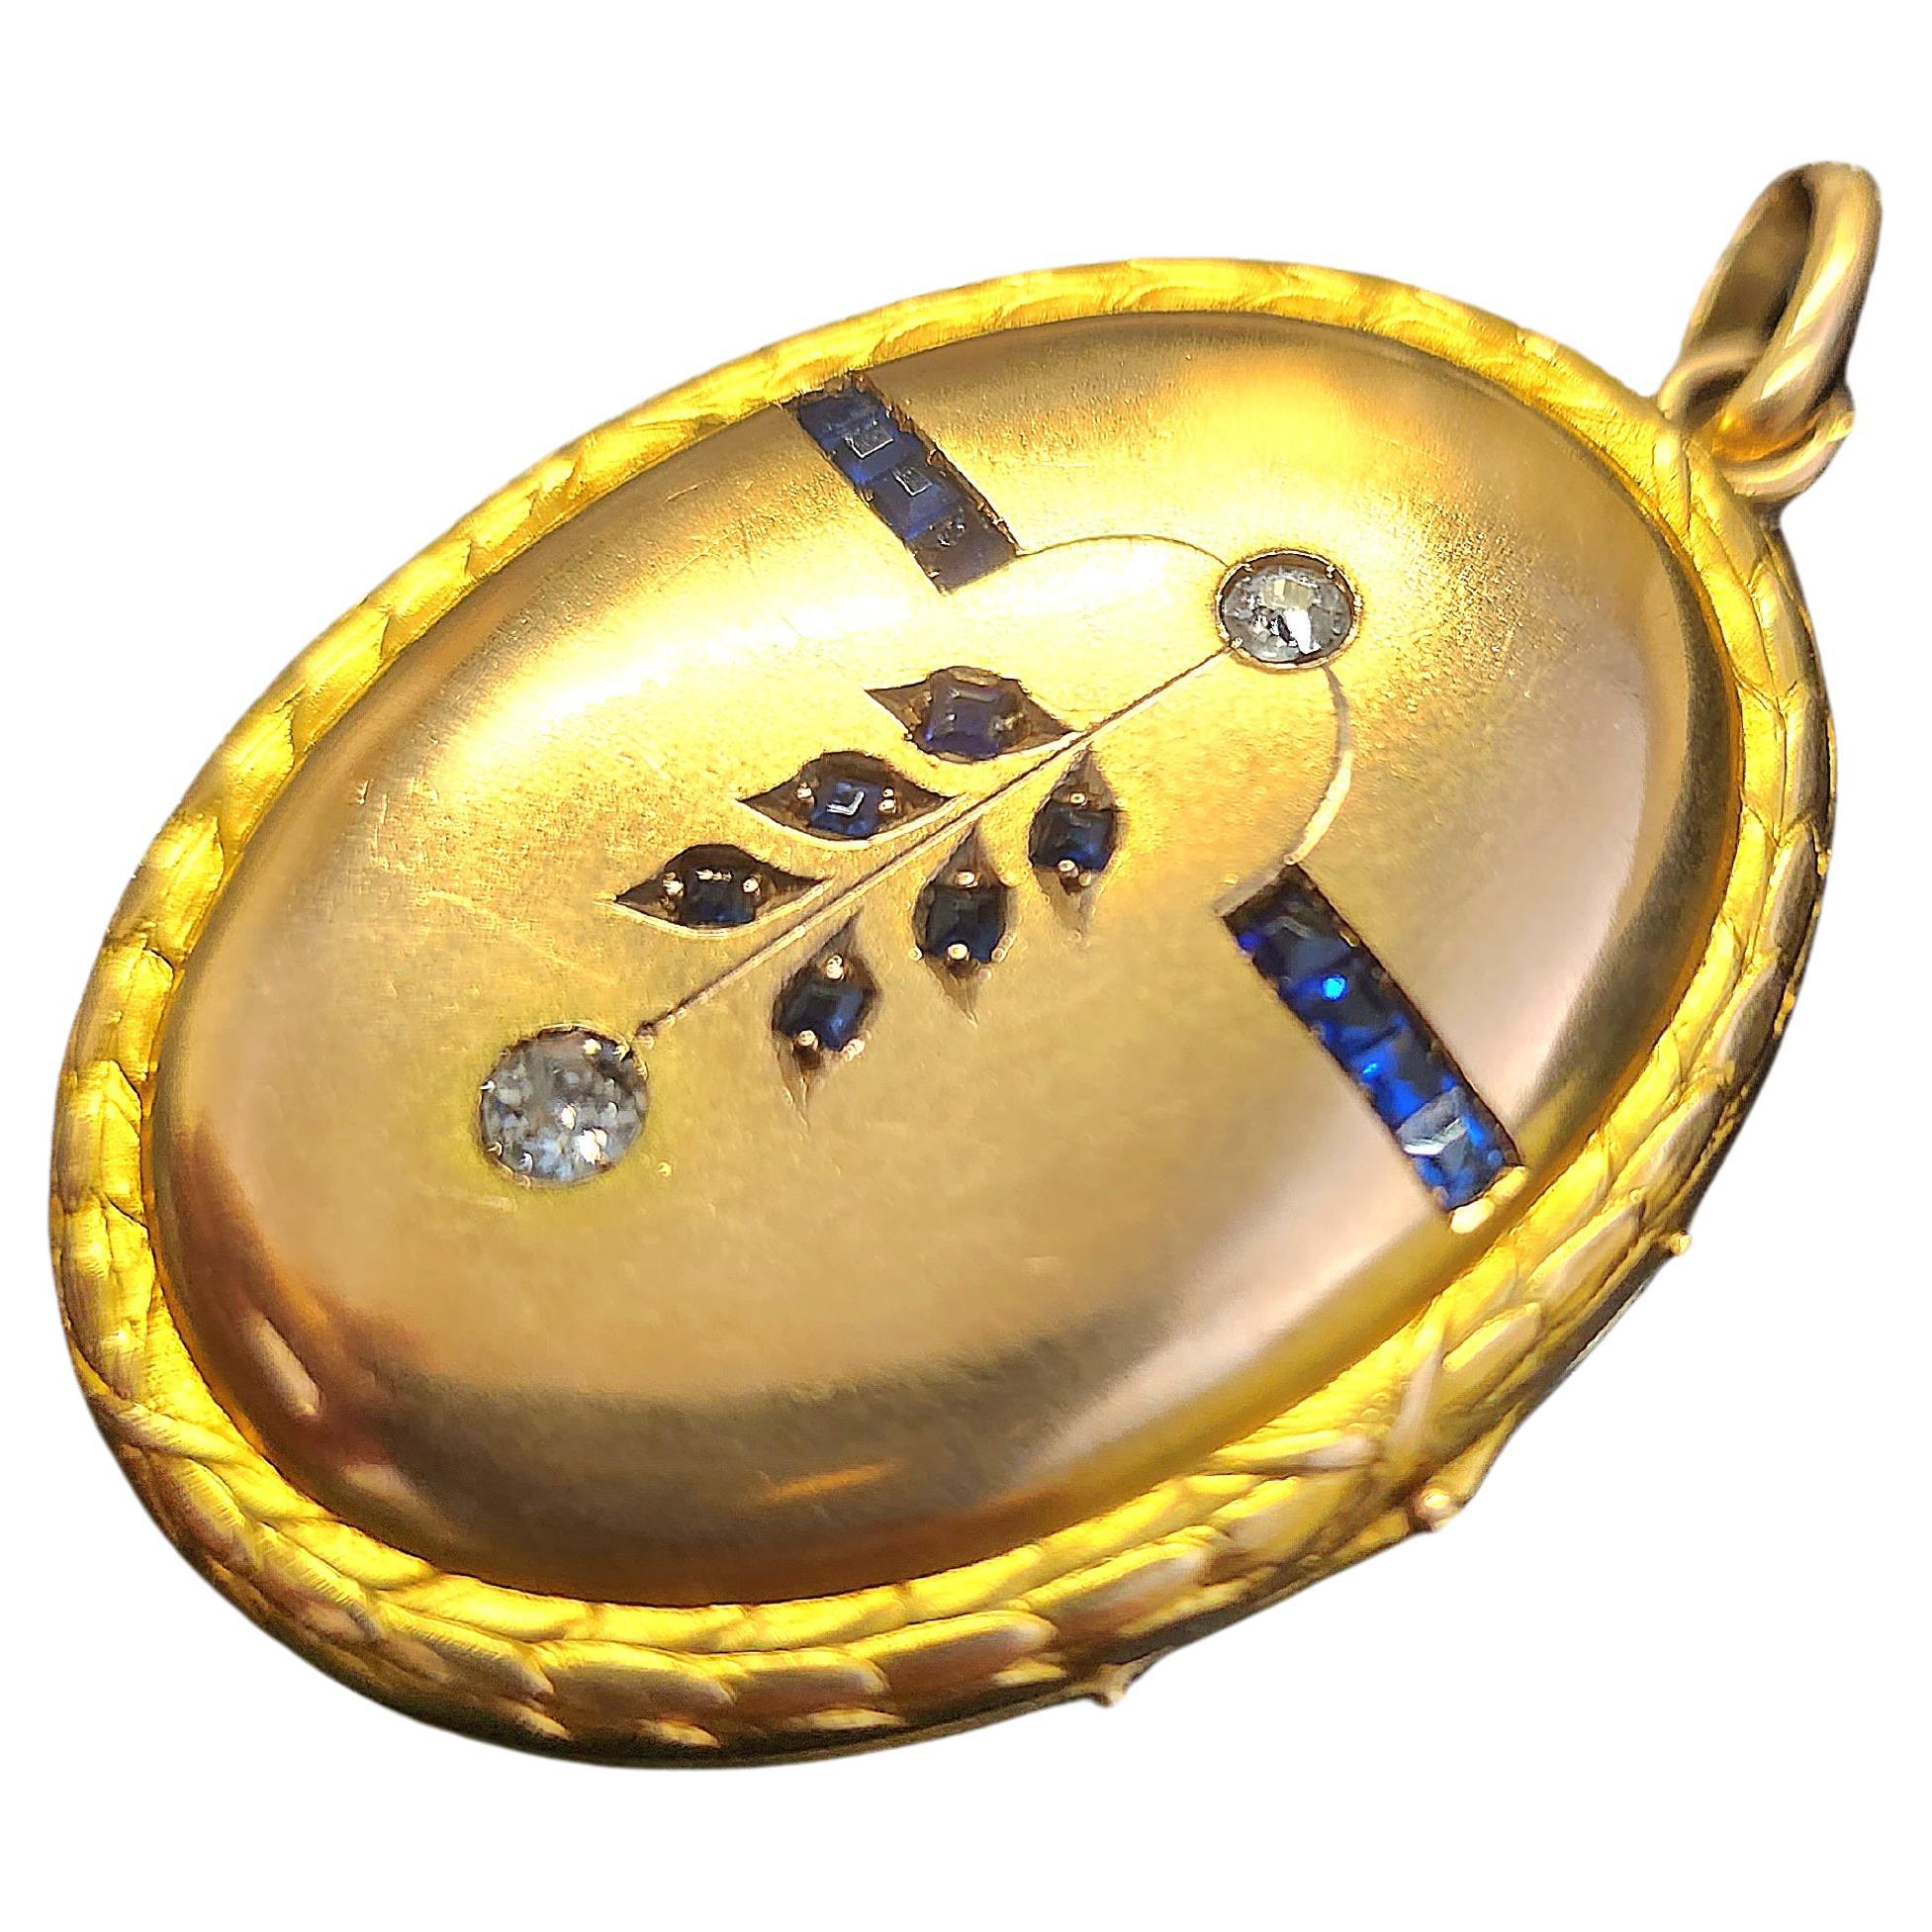 Antike Medaillon 14k Gold Anhänger in 2 Ton Farbe Roségold und Gelbgold zentriert mit 2 alten Mine geschliffenen Diamanten dekortiert mit natürlichen Baguet geschnitten blauen Saphiren Anhänger Länge 5cm stammt aus 1900/1910er Jahren während der